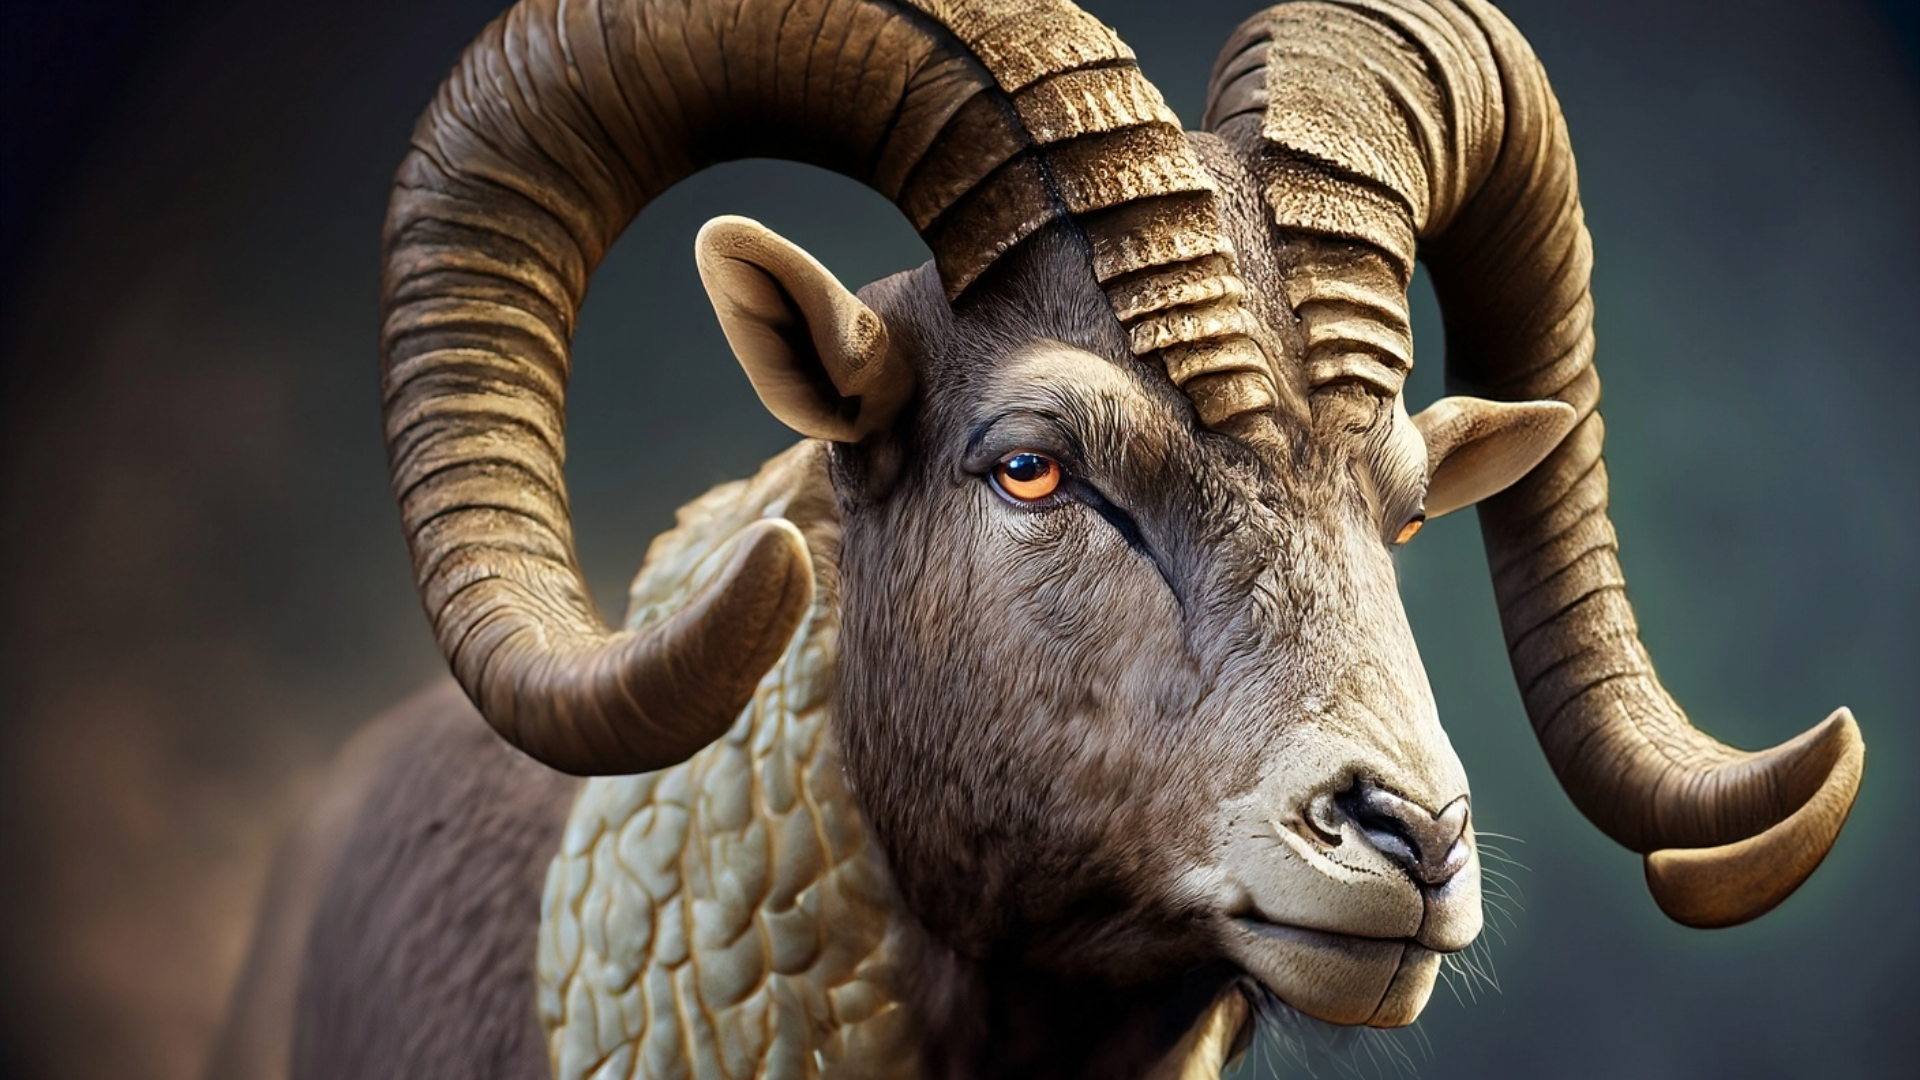 Aries Spirit Animal - Ram